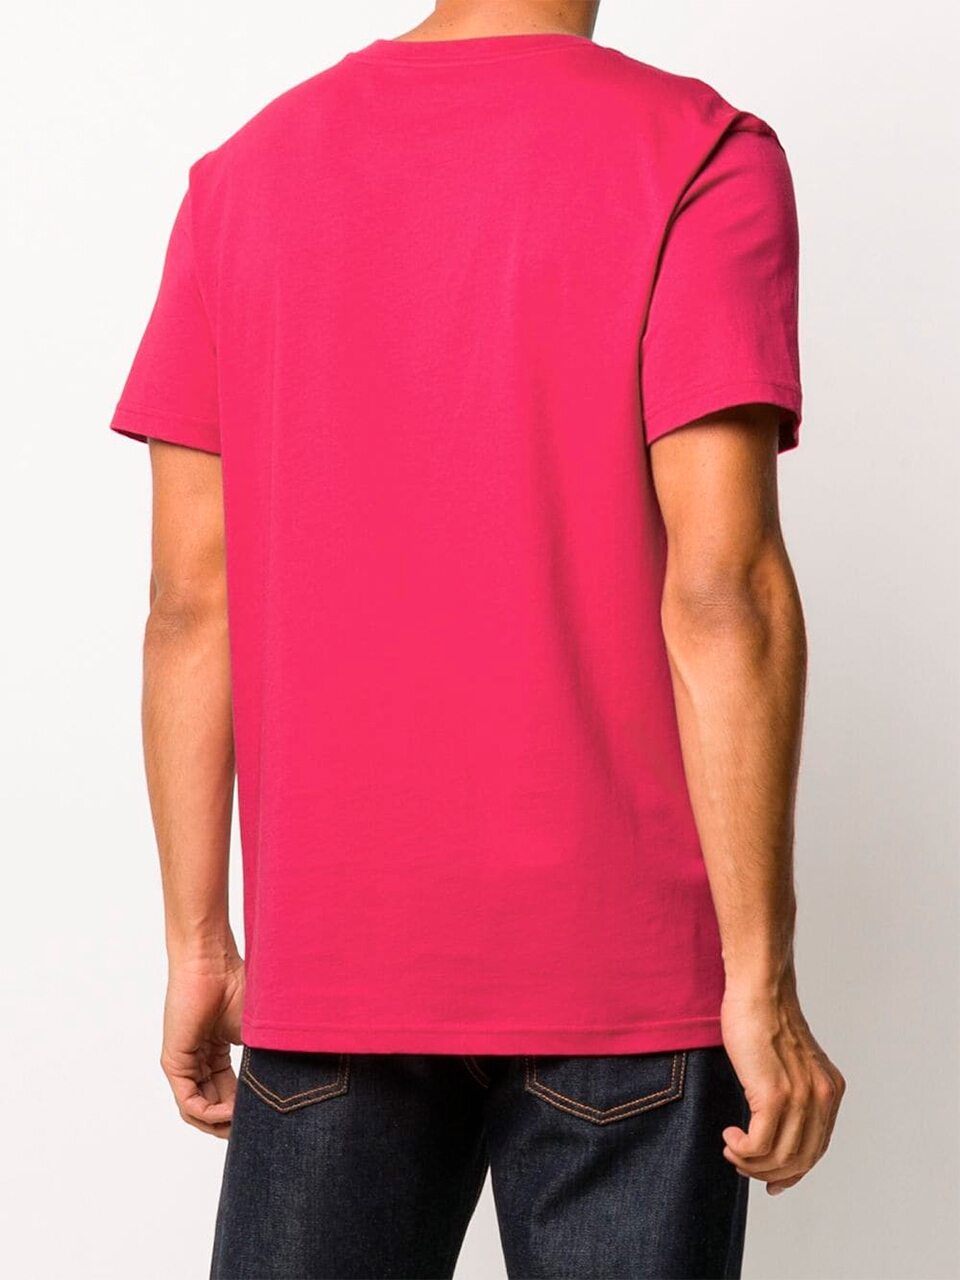 Imagem de: Camiseta Moschino Rosa Choque com Logo Preto